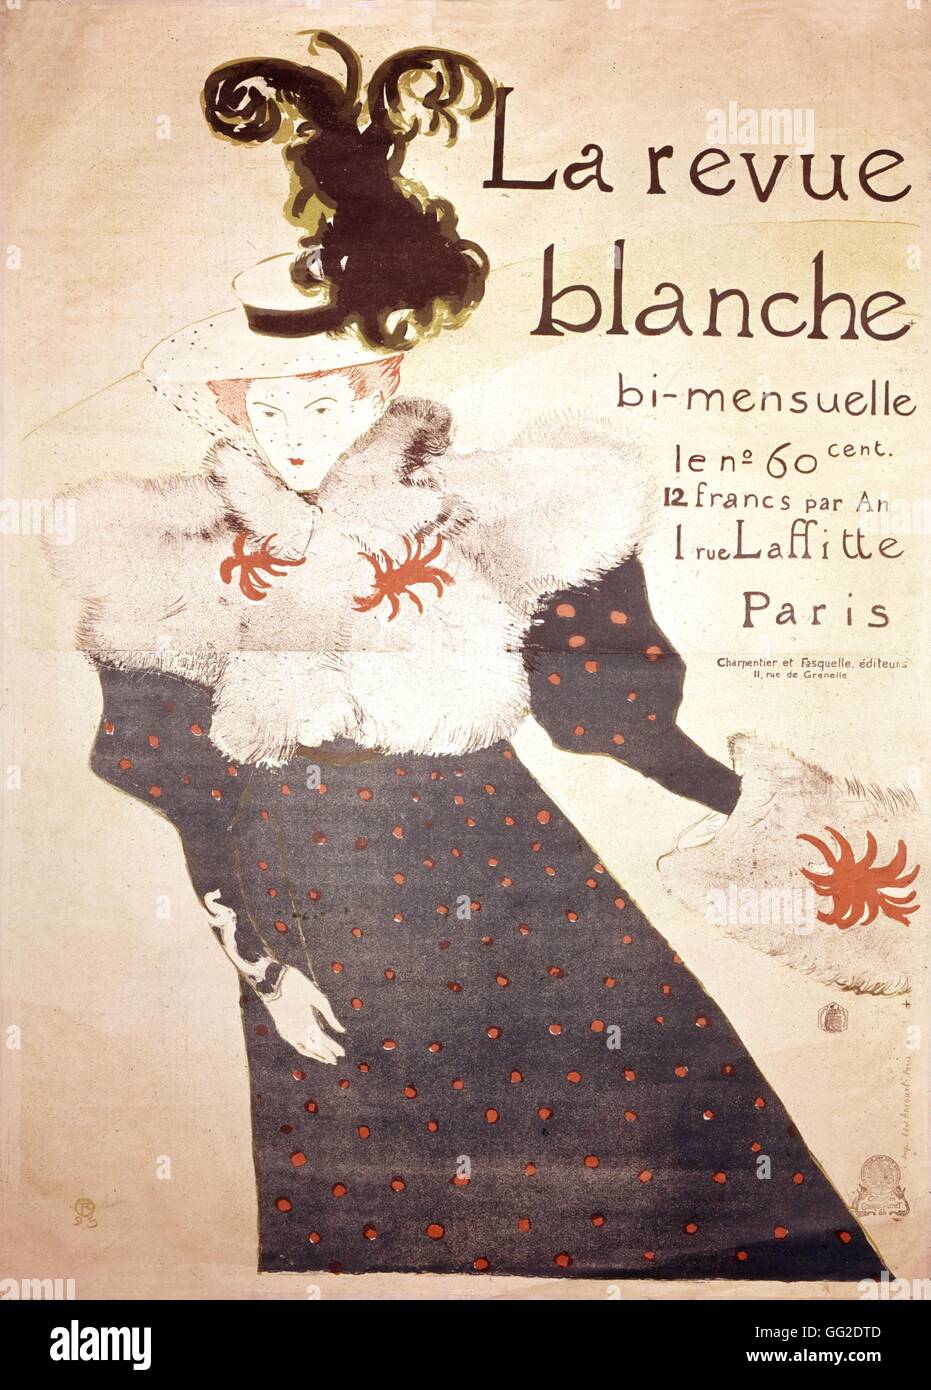 Henri de Toulouse-Lautrec, affiche publicitaire pour "La revue blanche" 19e siècle Banque D'Images